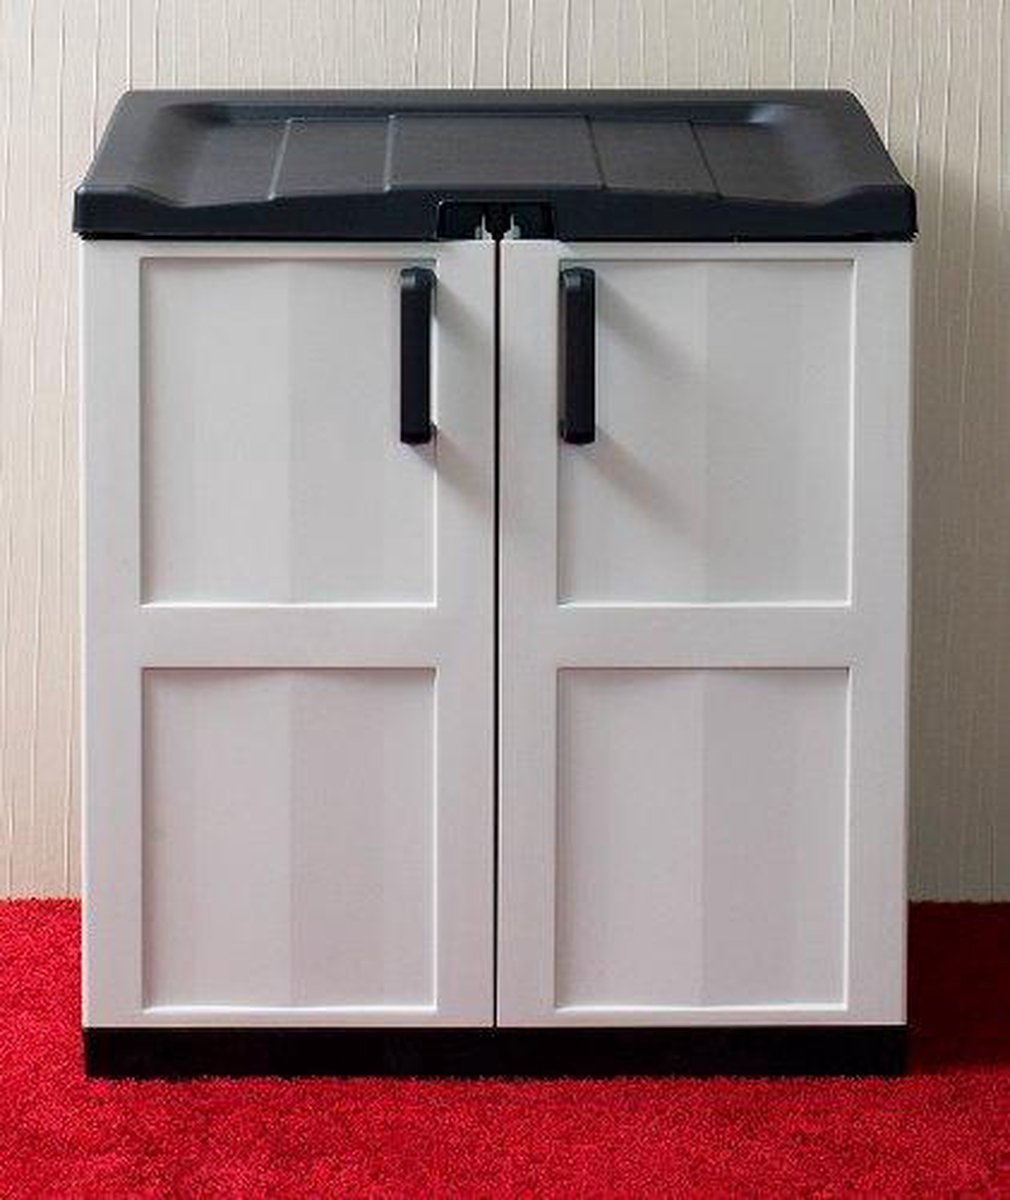 Toomax recyclingbox/ opbergkast maat XL 102x90x54cm voor bv vuilniszakken  Grijs/Zwart | bol.com